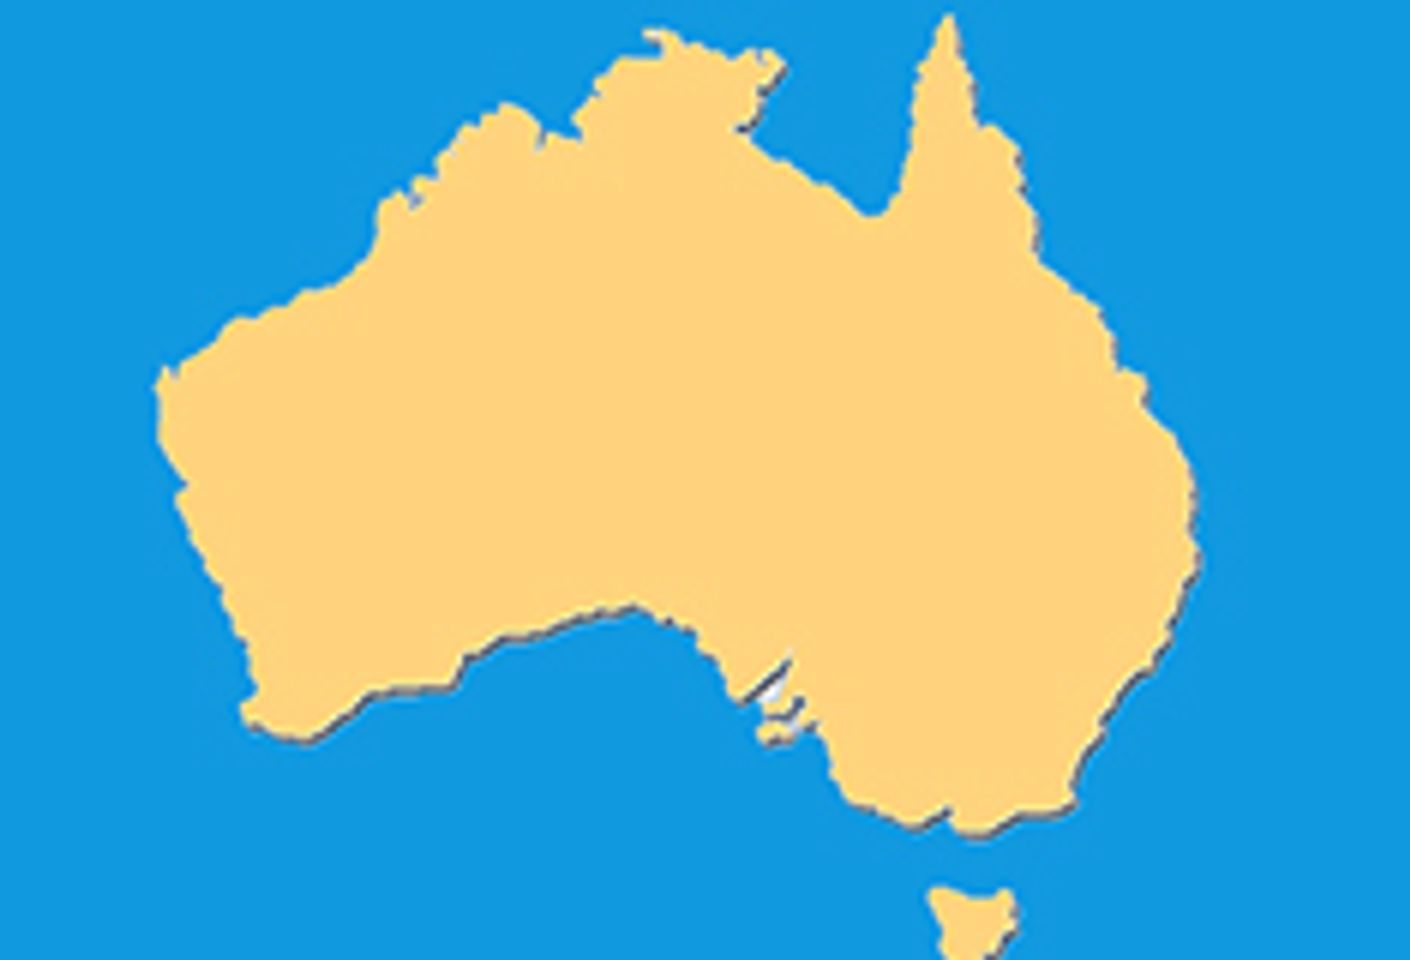 Eros Association Opposes Australia Ban